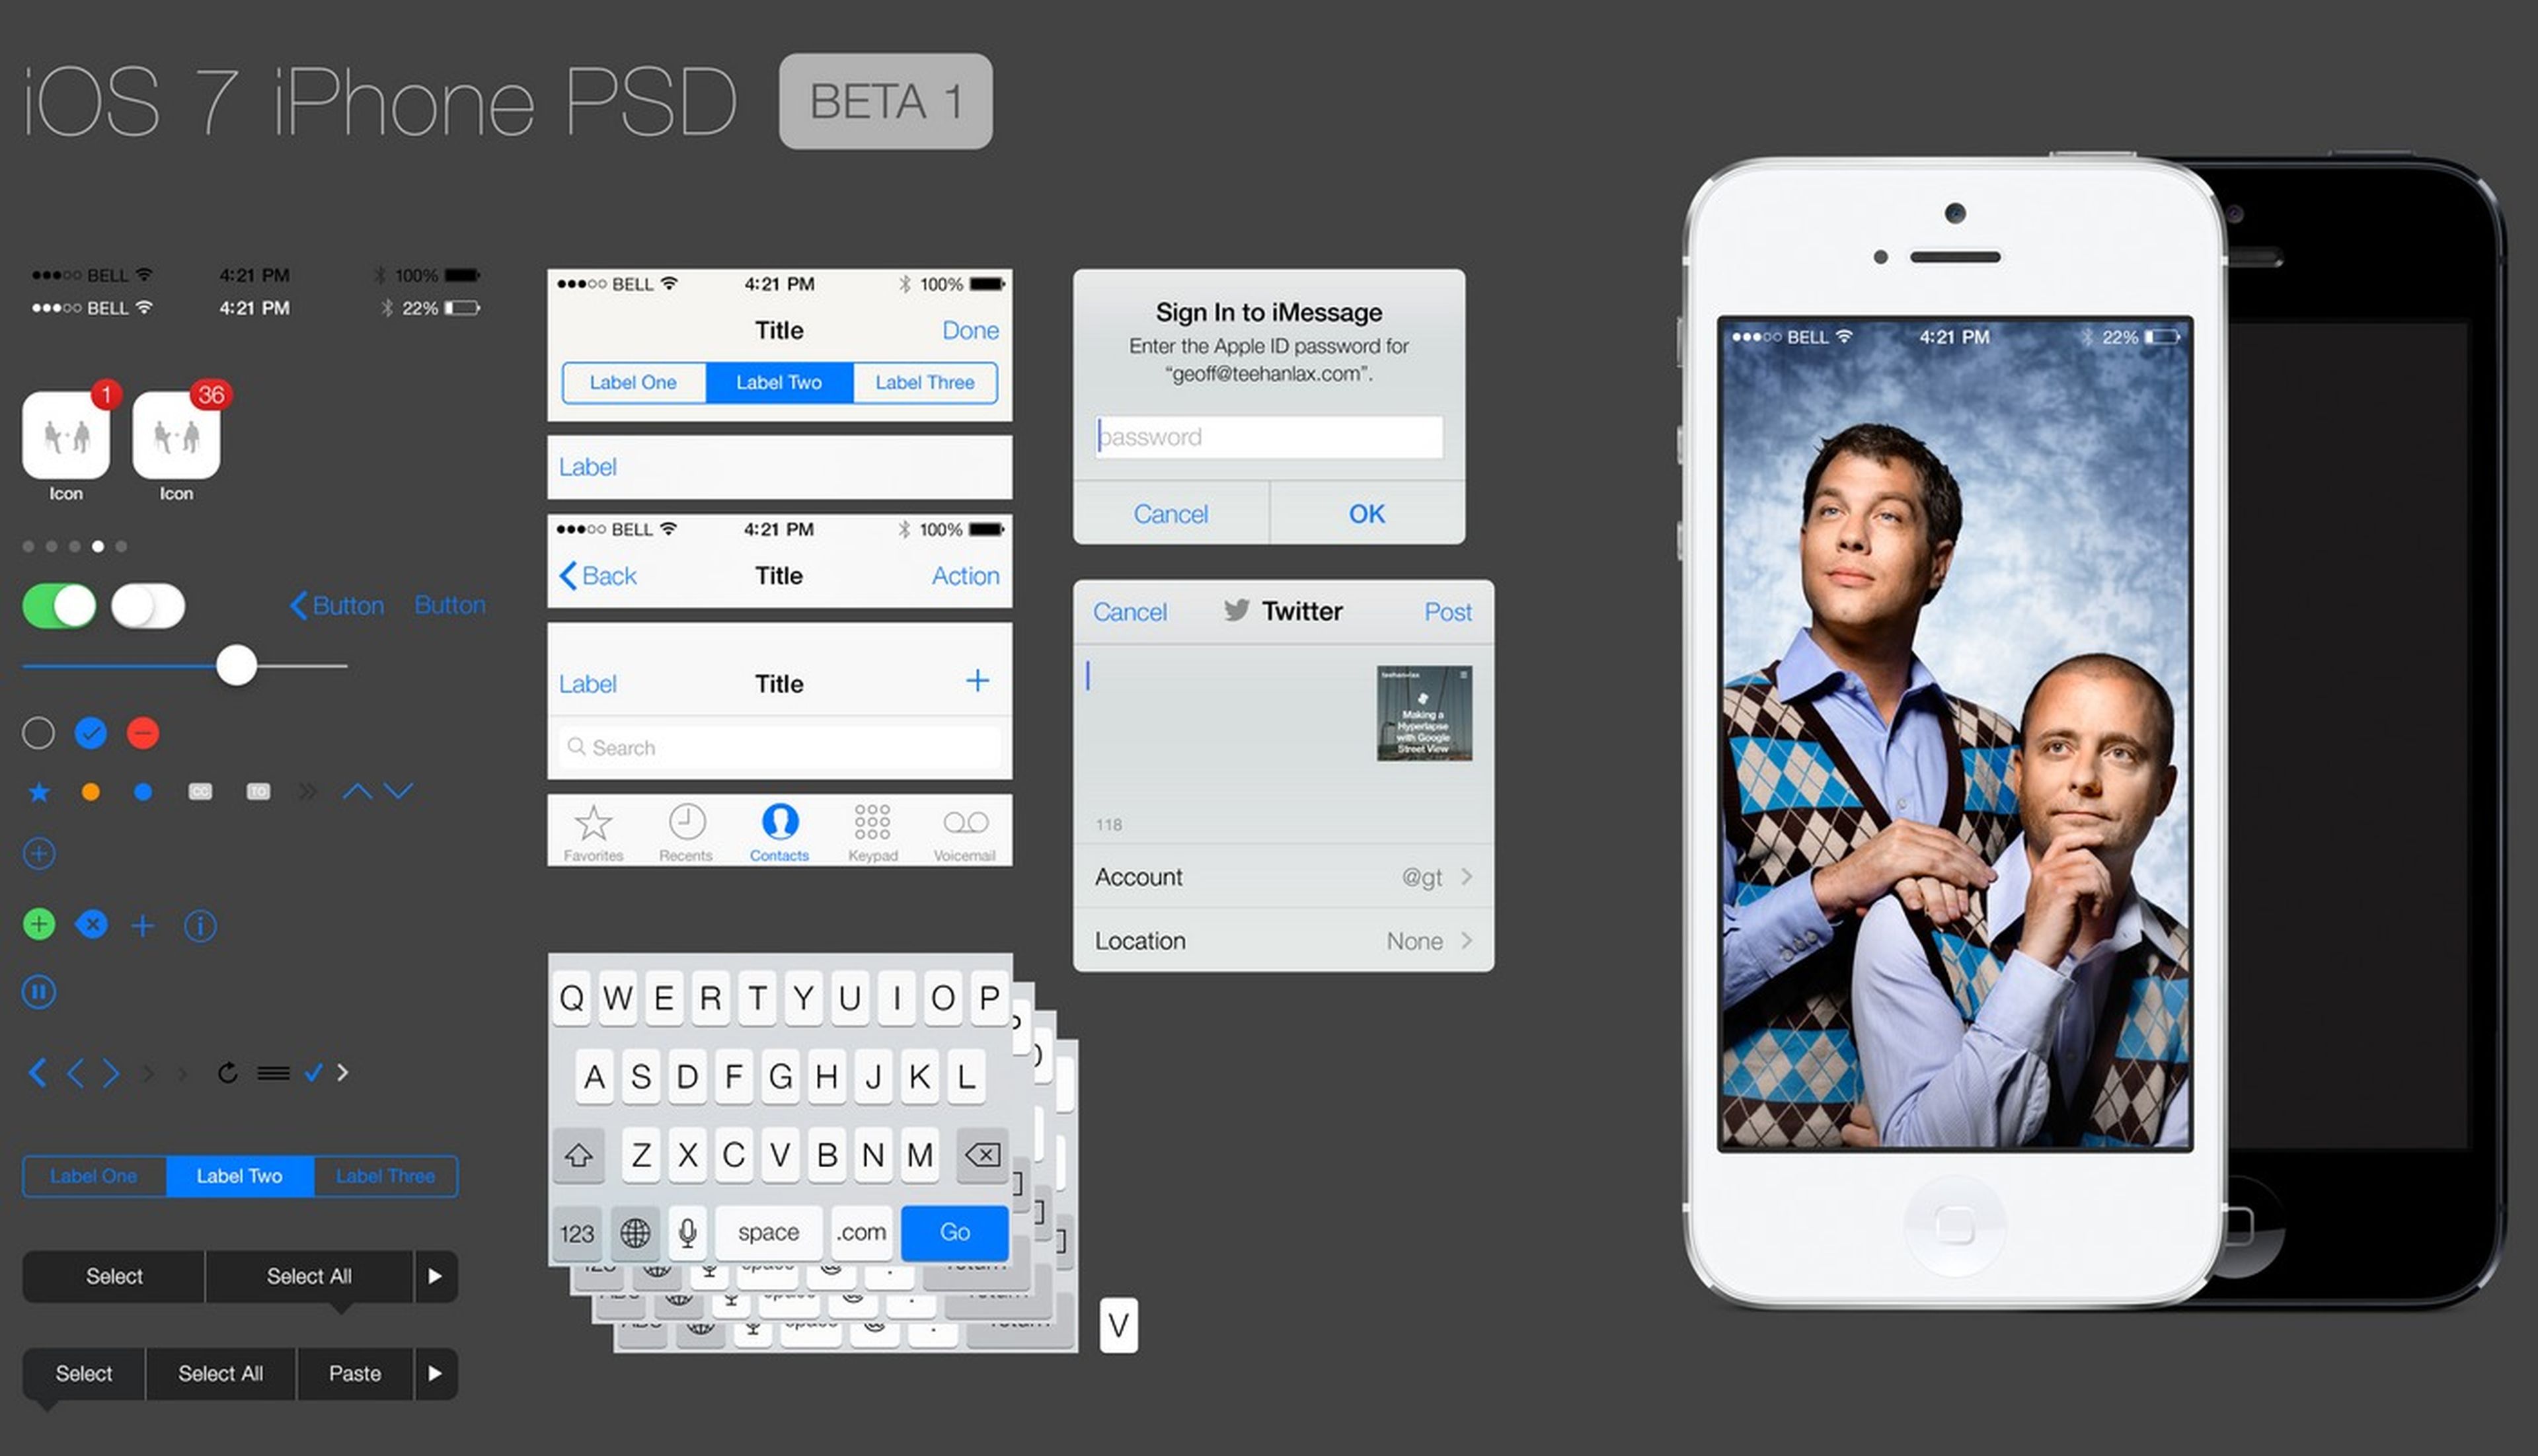 Interfaz iOS 7 de Apple en PSD